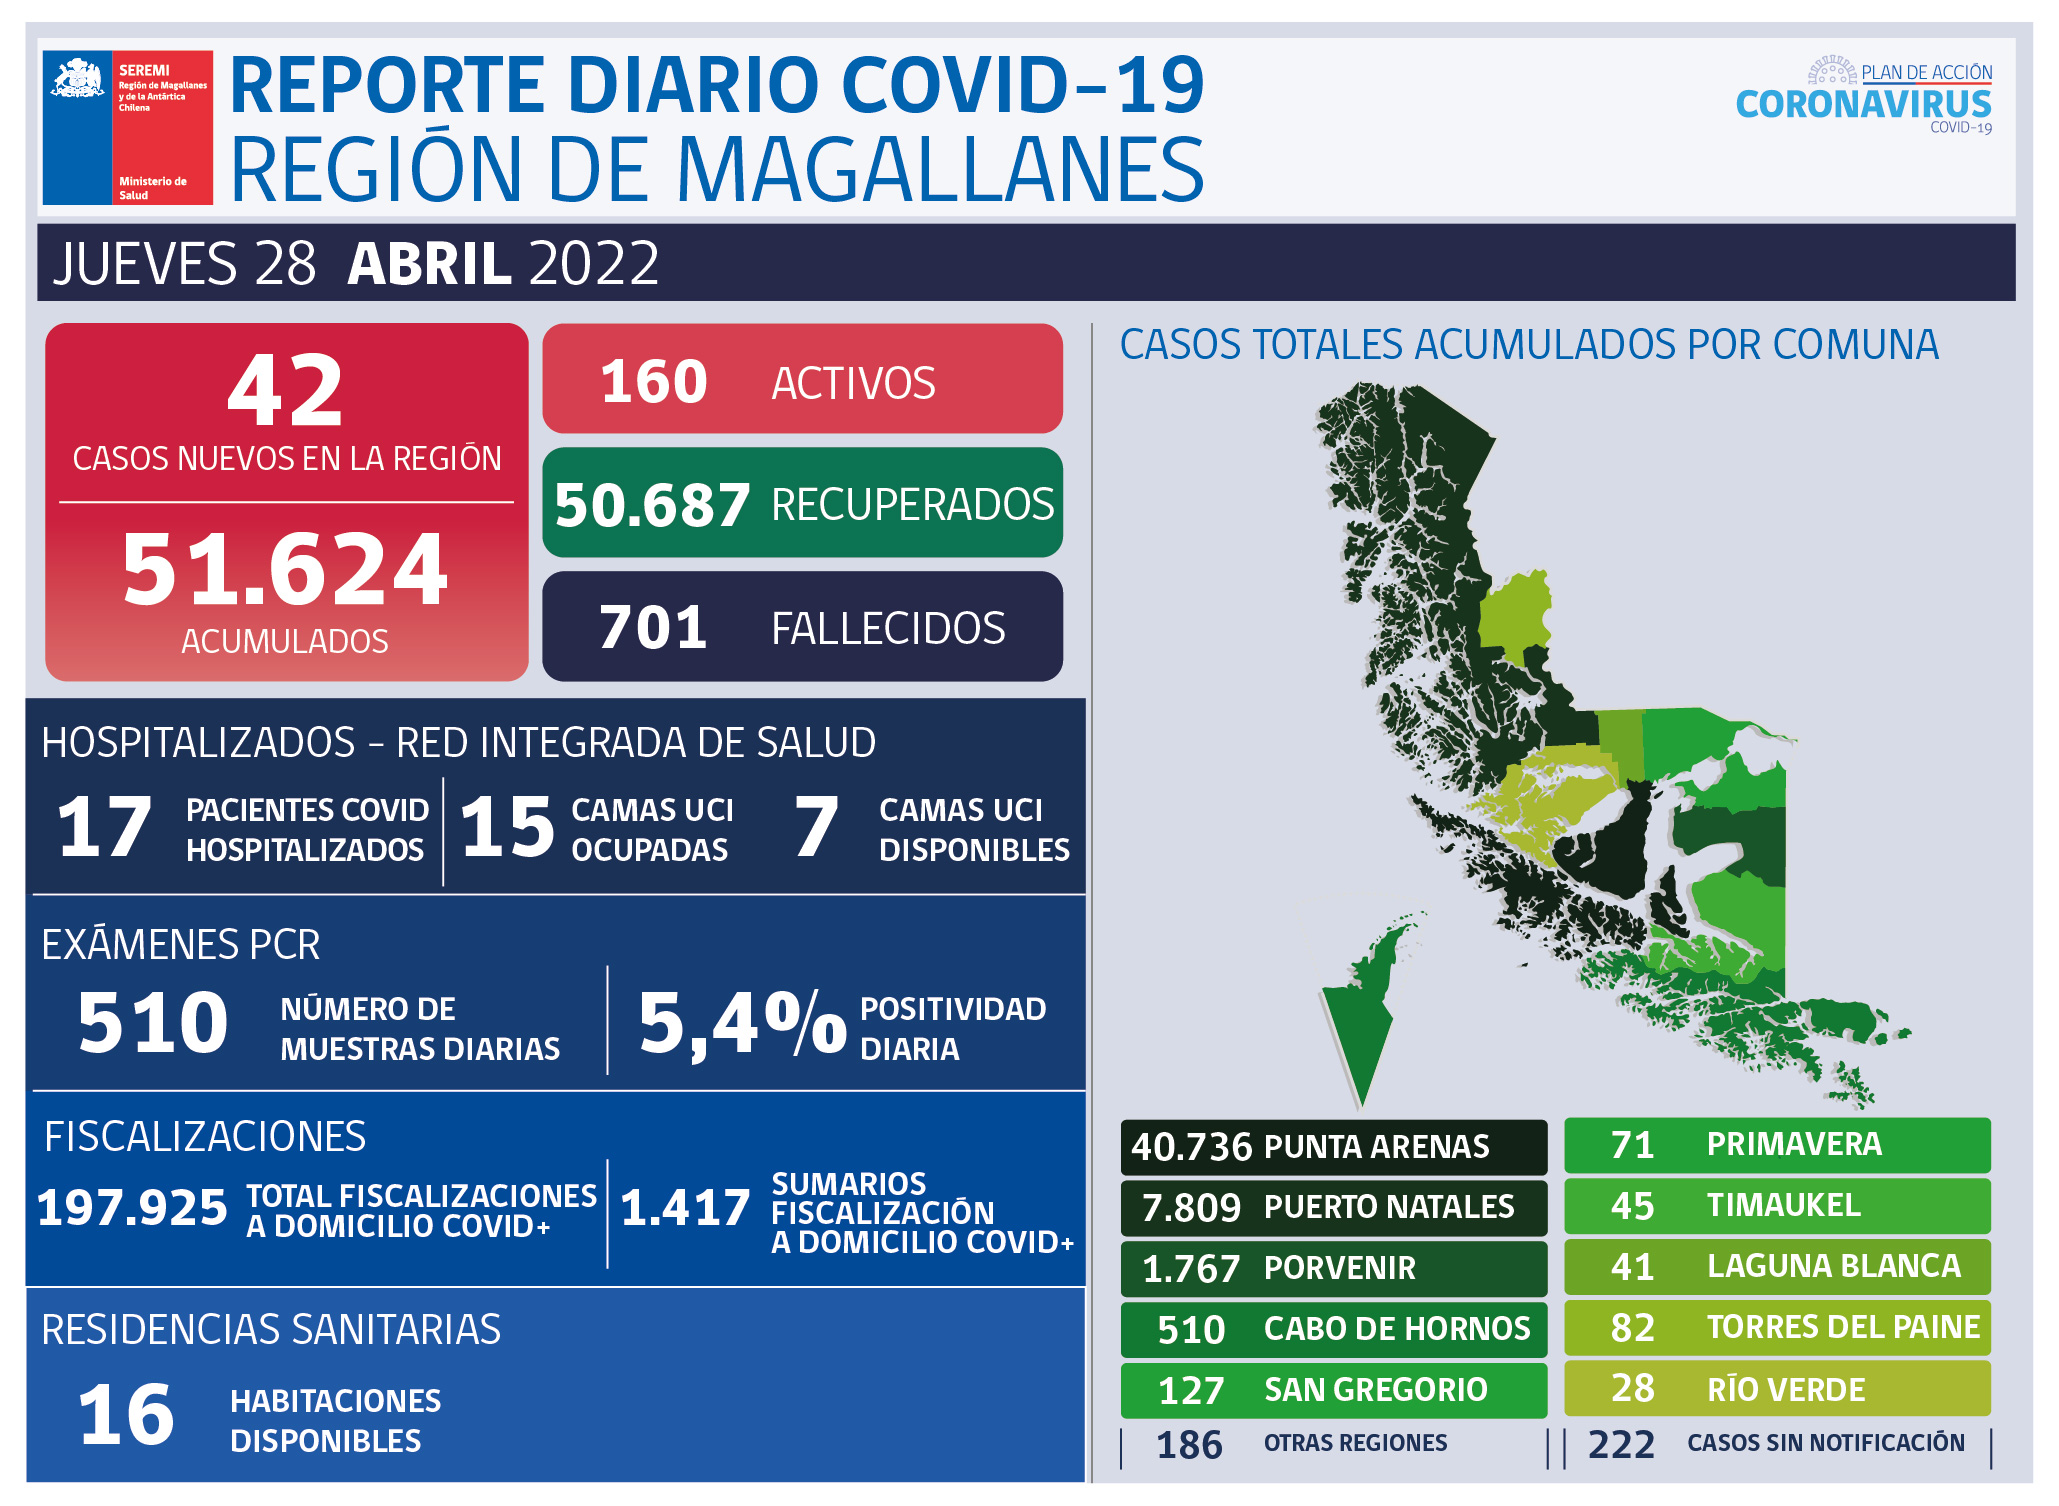 42 nuevos casos de covid19 en Magallanes se registran este jueves 28 de abril